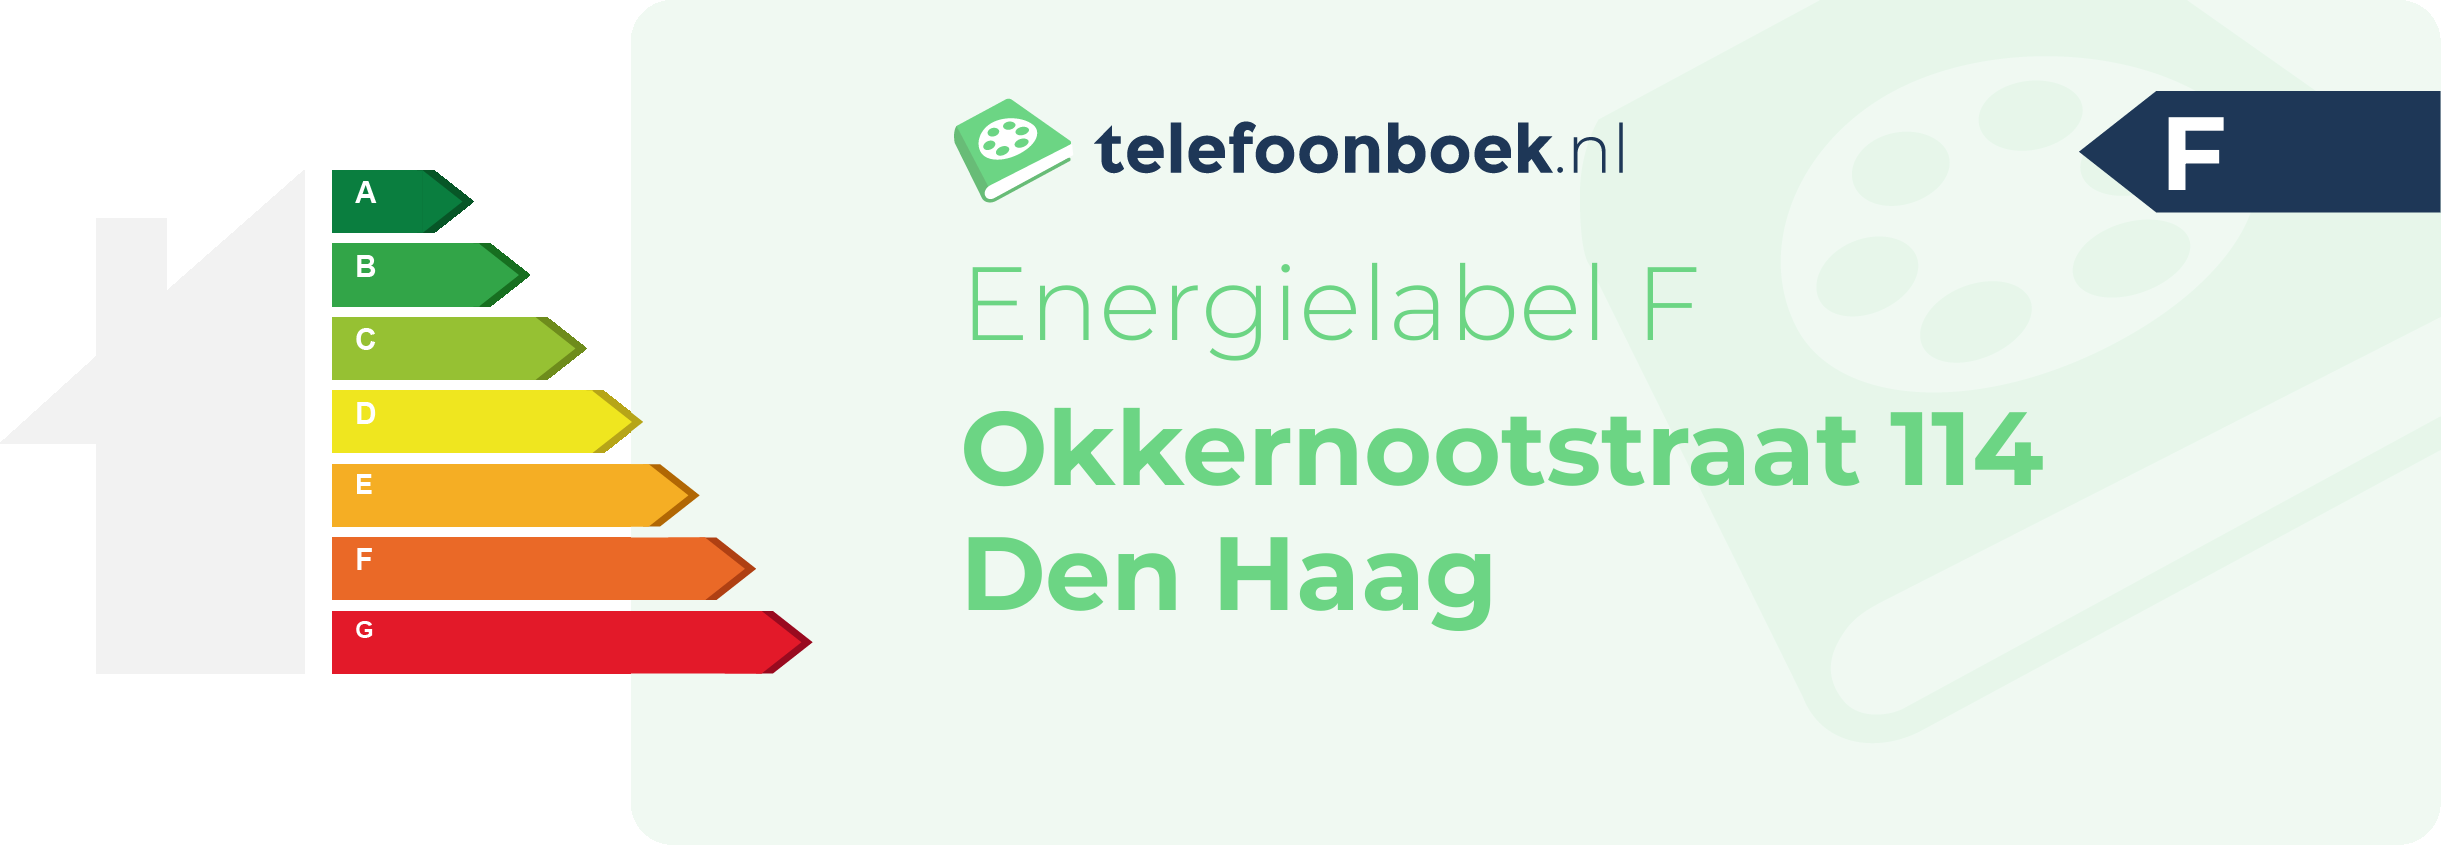 Energielabel Okkernootstraat 114 Den Haag